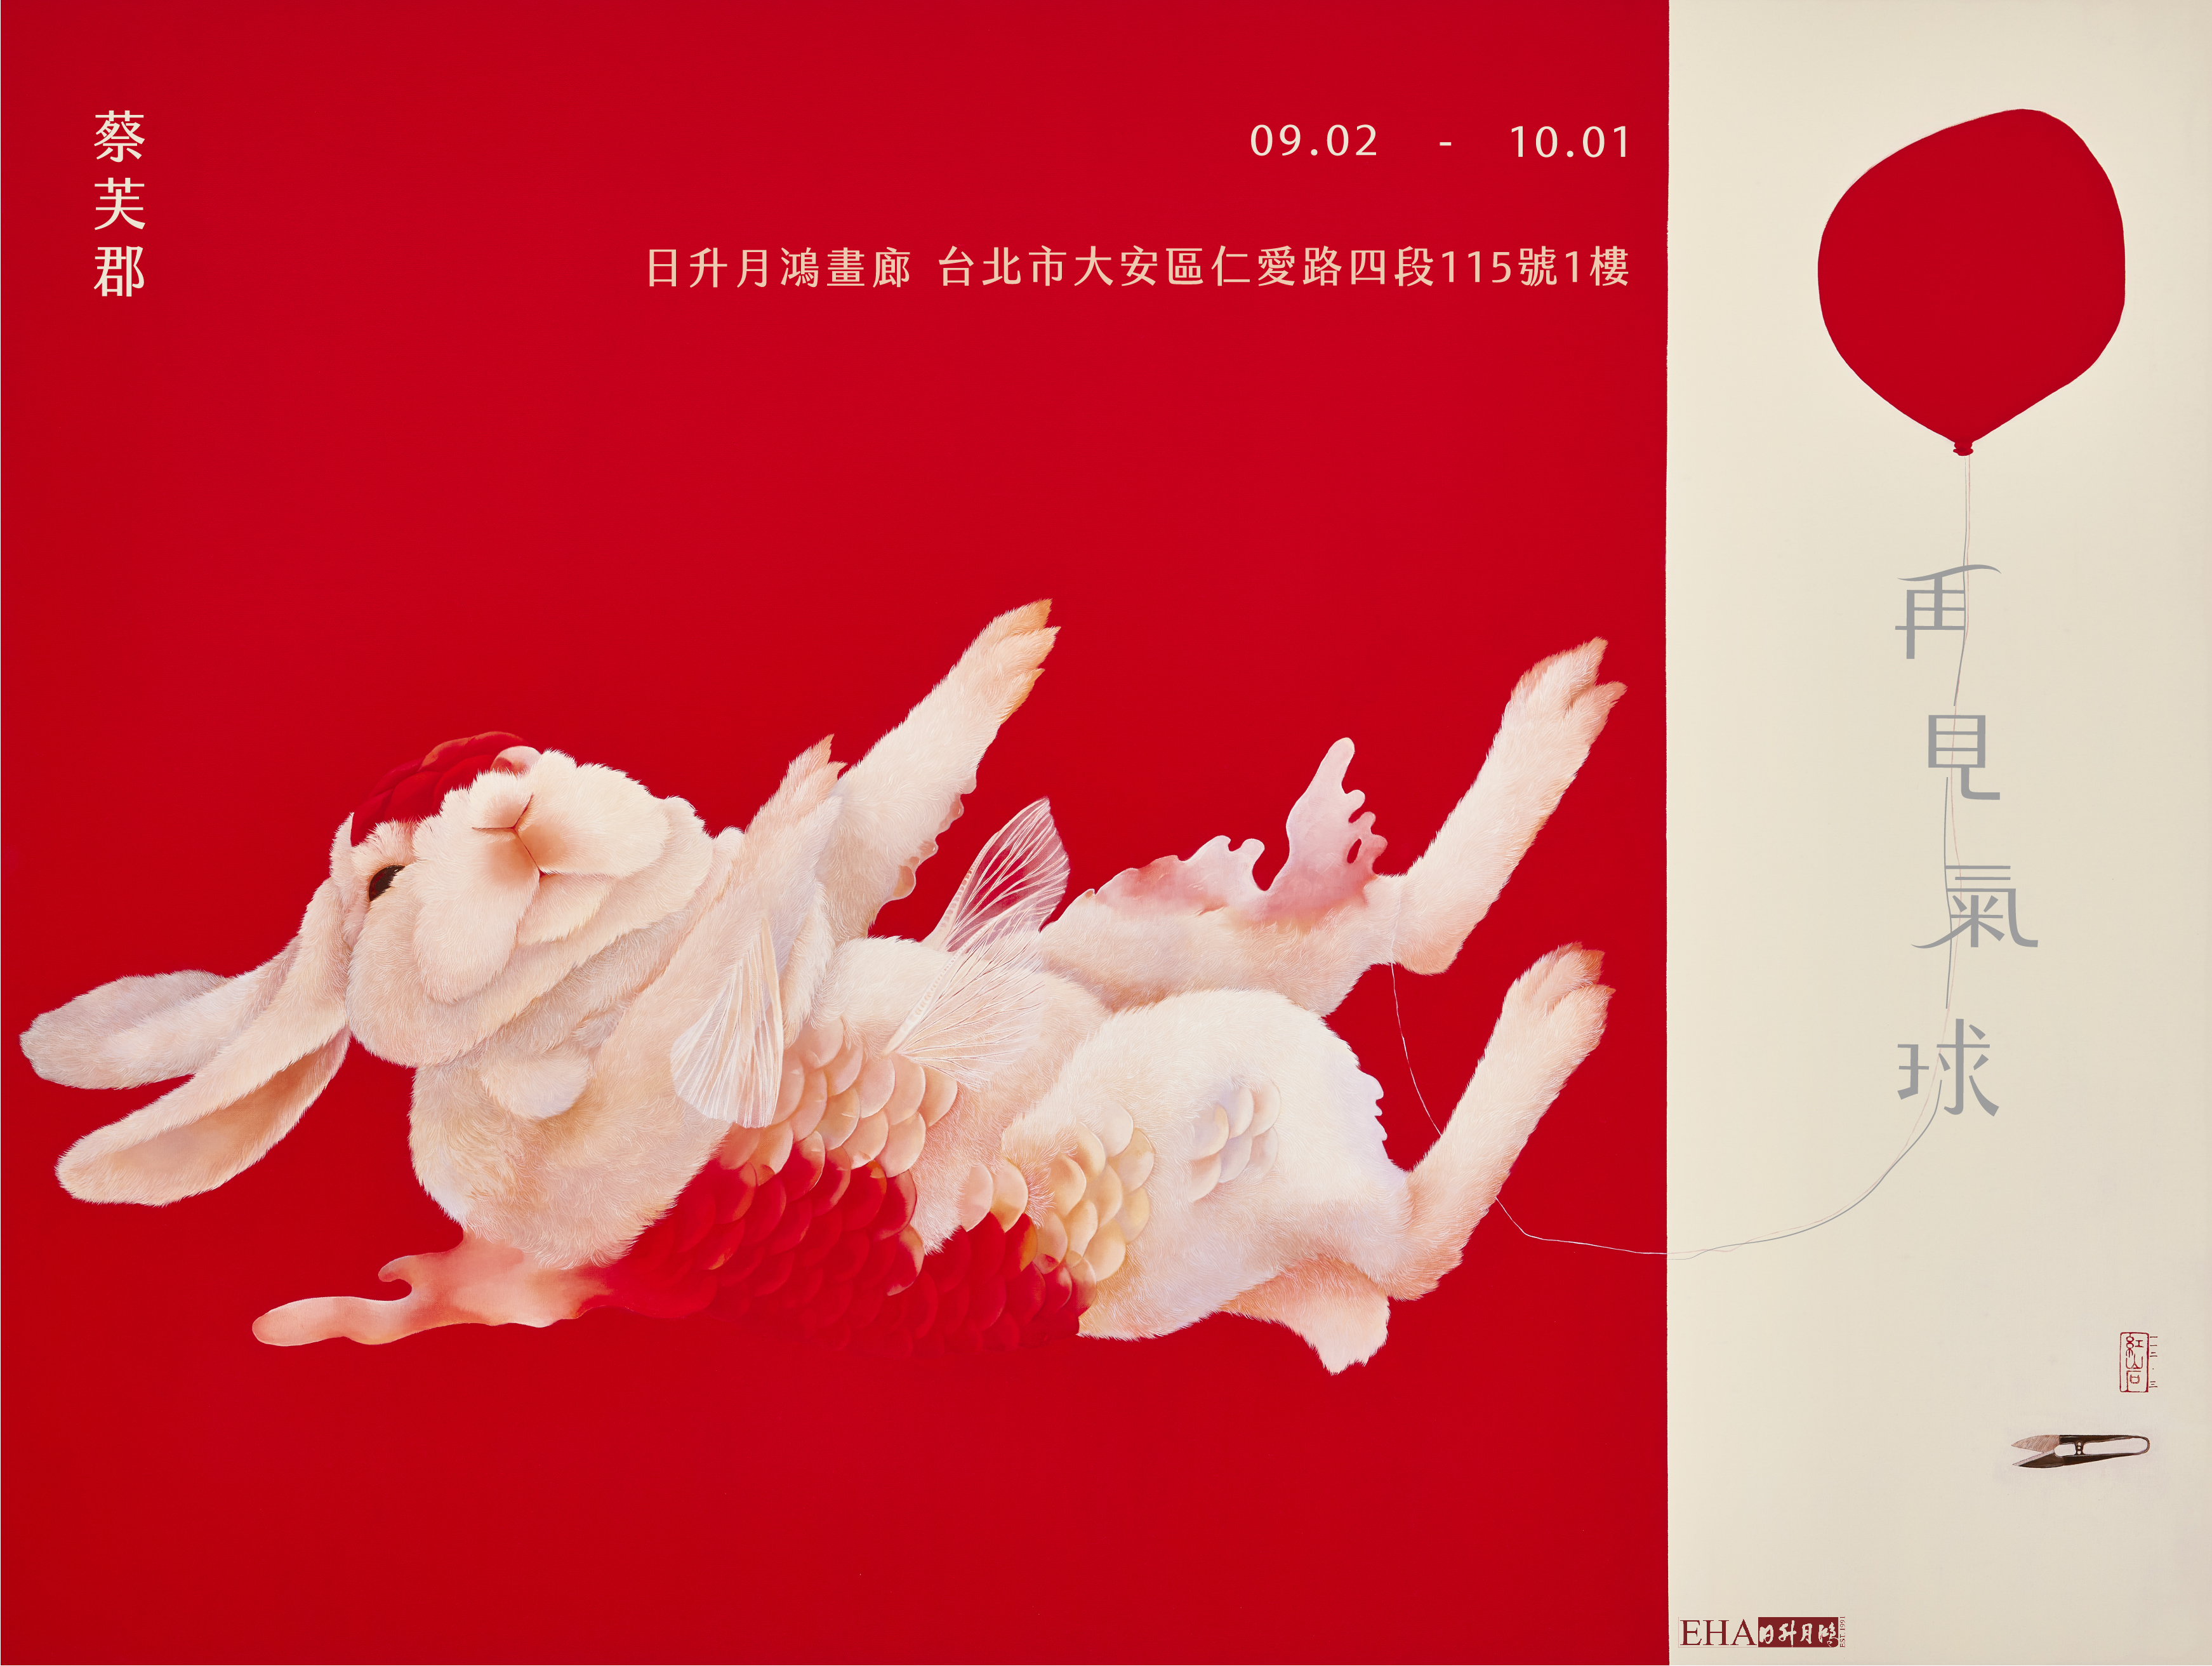 再見氣球－蔡芙郡個展 Meet Again－Fu-Chun Tsai’ s solo exhibition 